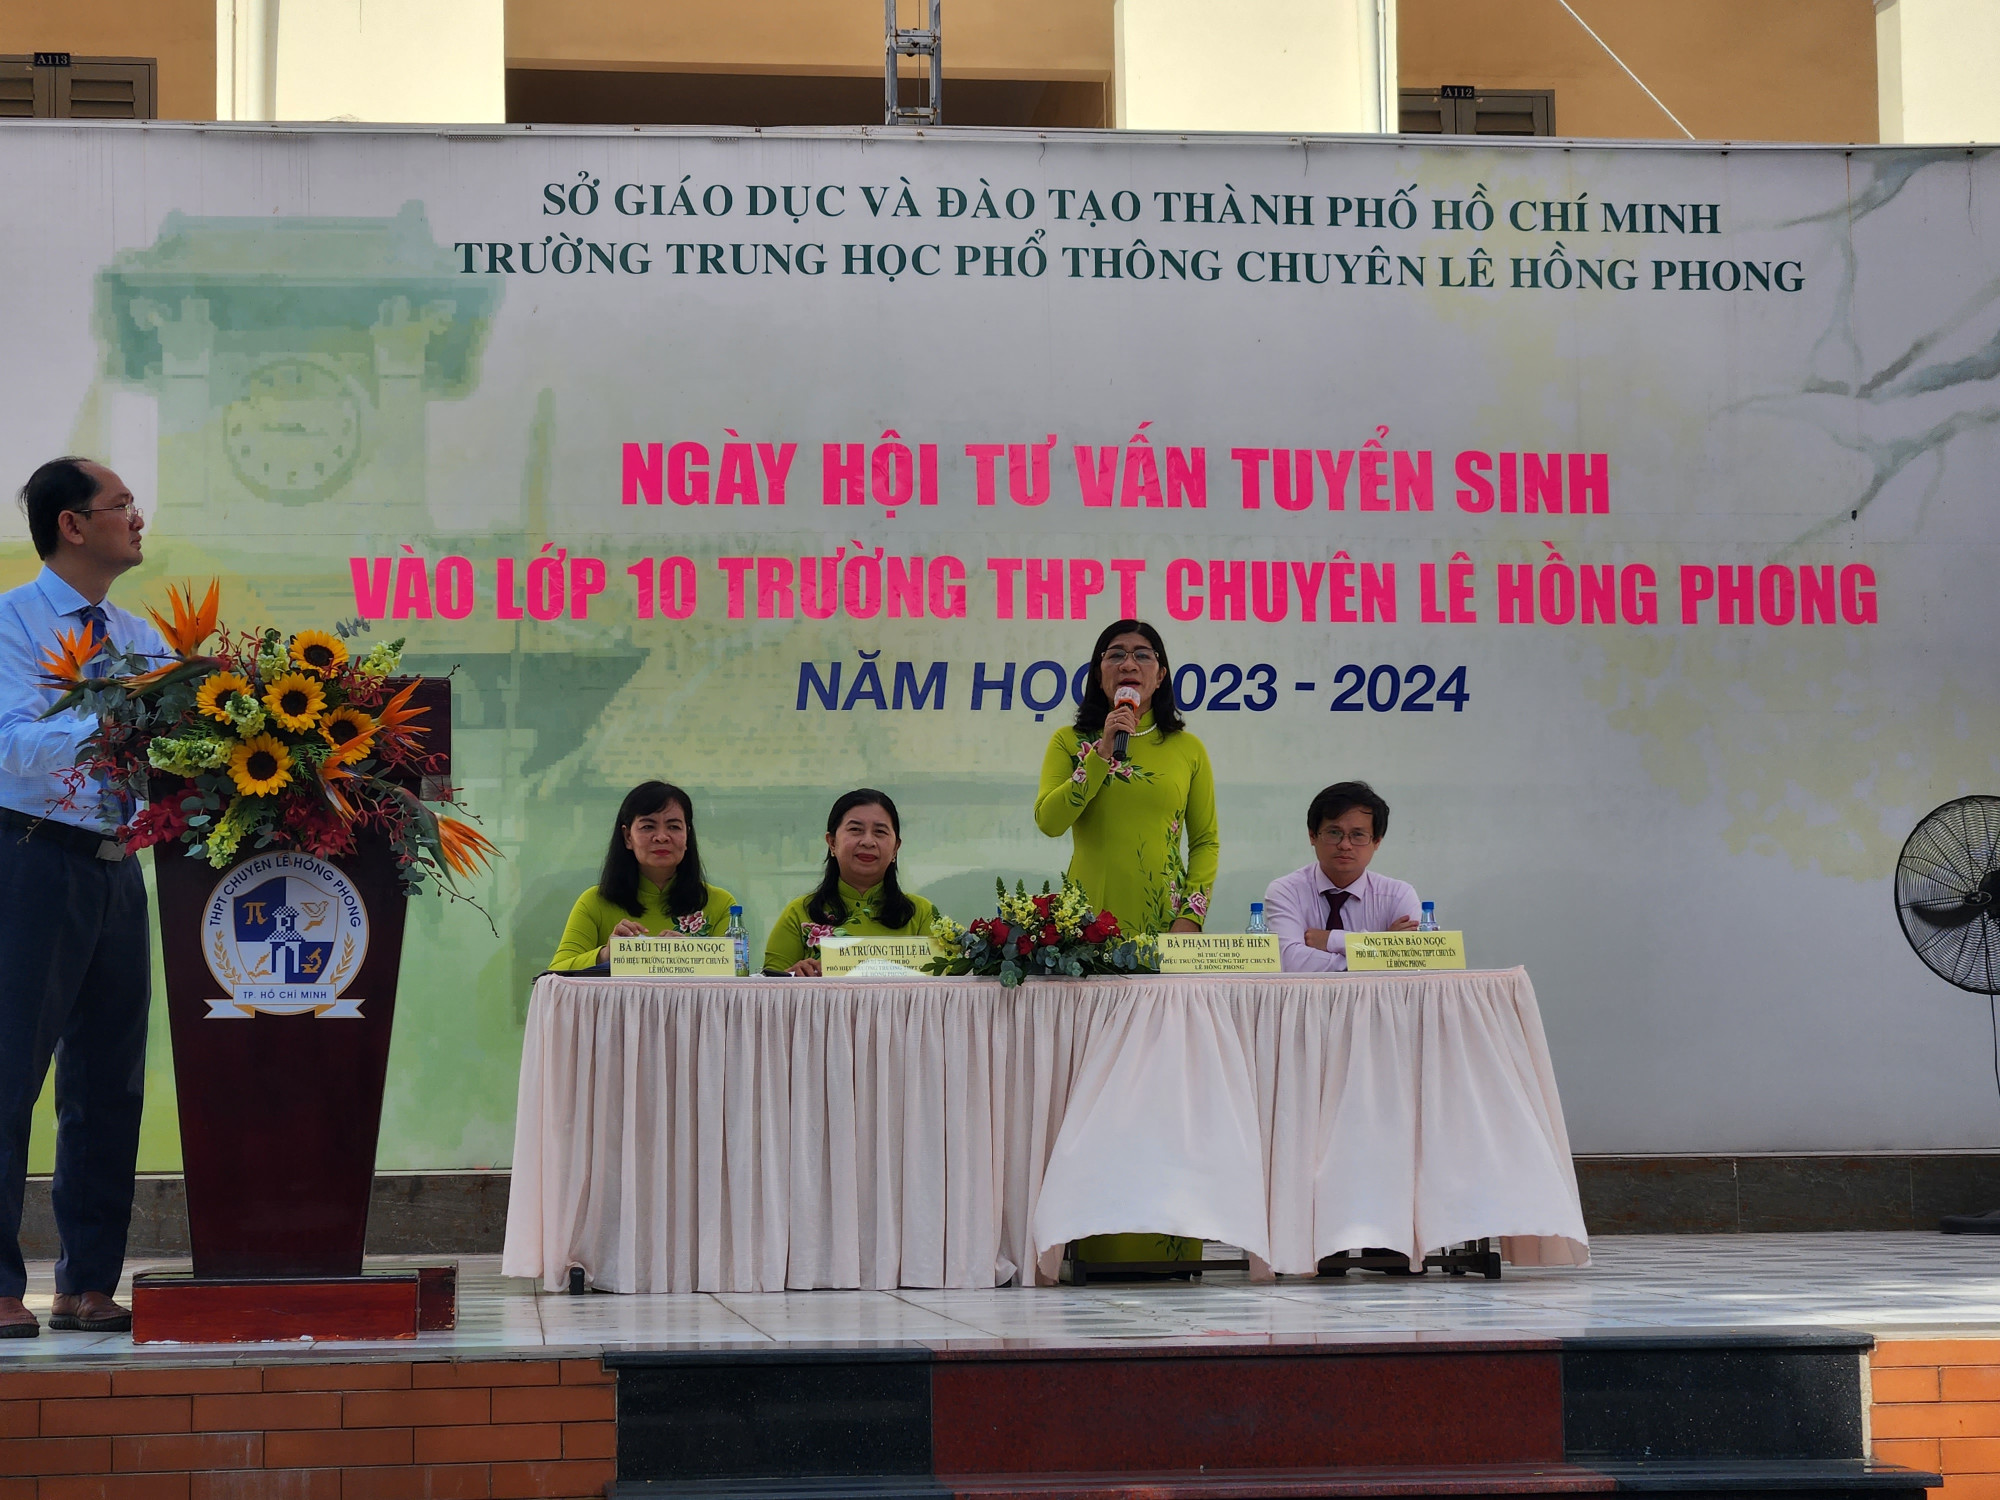 Cô Phạm Thị Bé Hiền- Hiệu trưởng Trường THPT chuyên Lê Hồng Phong giải đáp những thắc mắc cho phụ huynh học sinh tại phần tư vấn chung